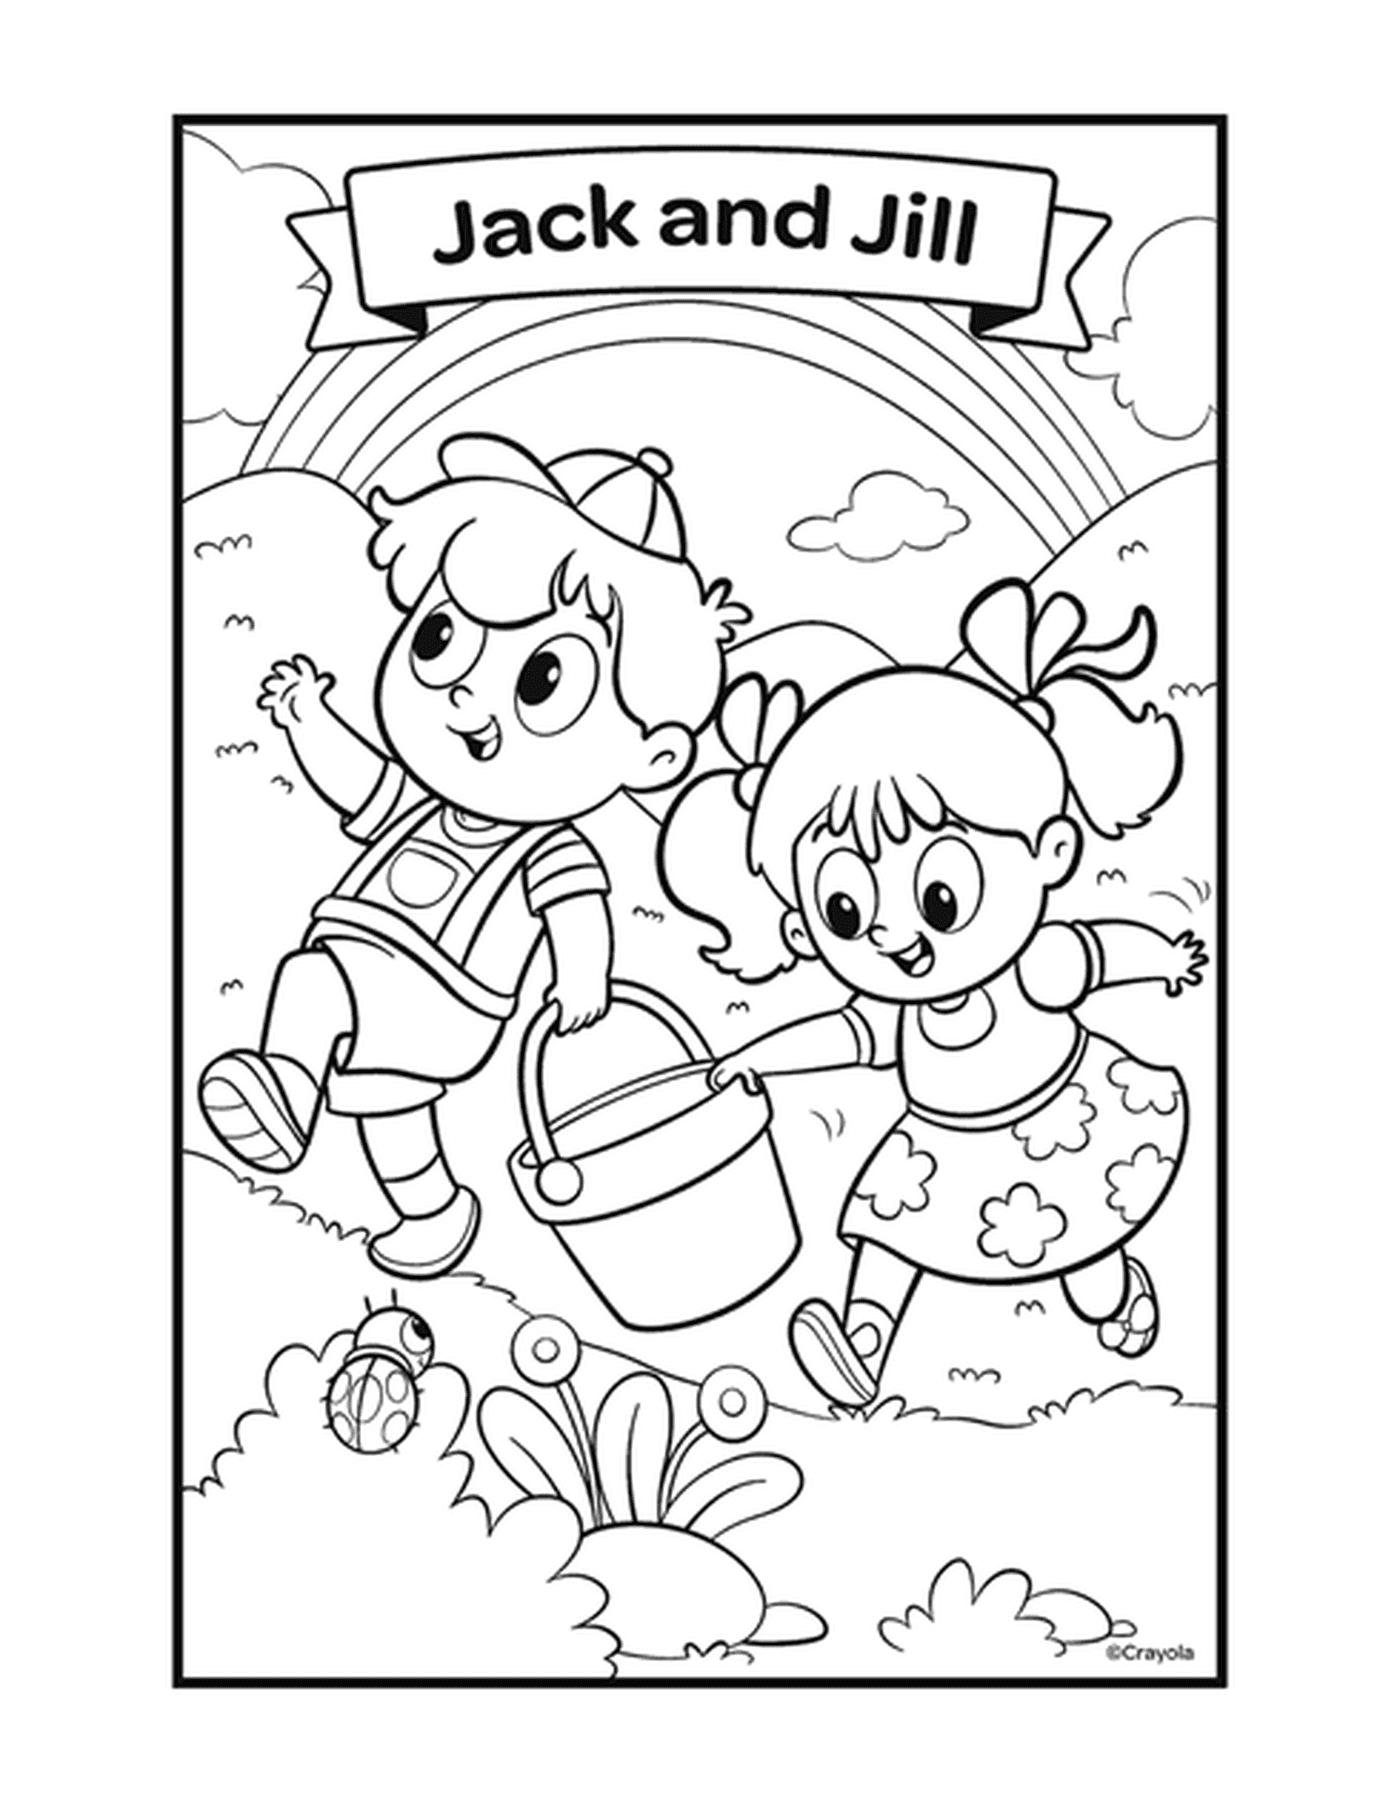  Jack y Jill con dos niños jugando con un cubo 